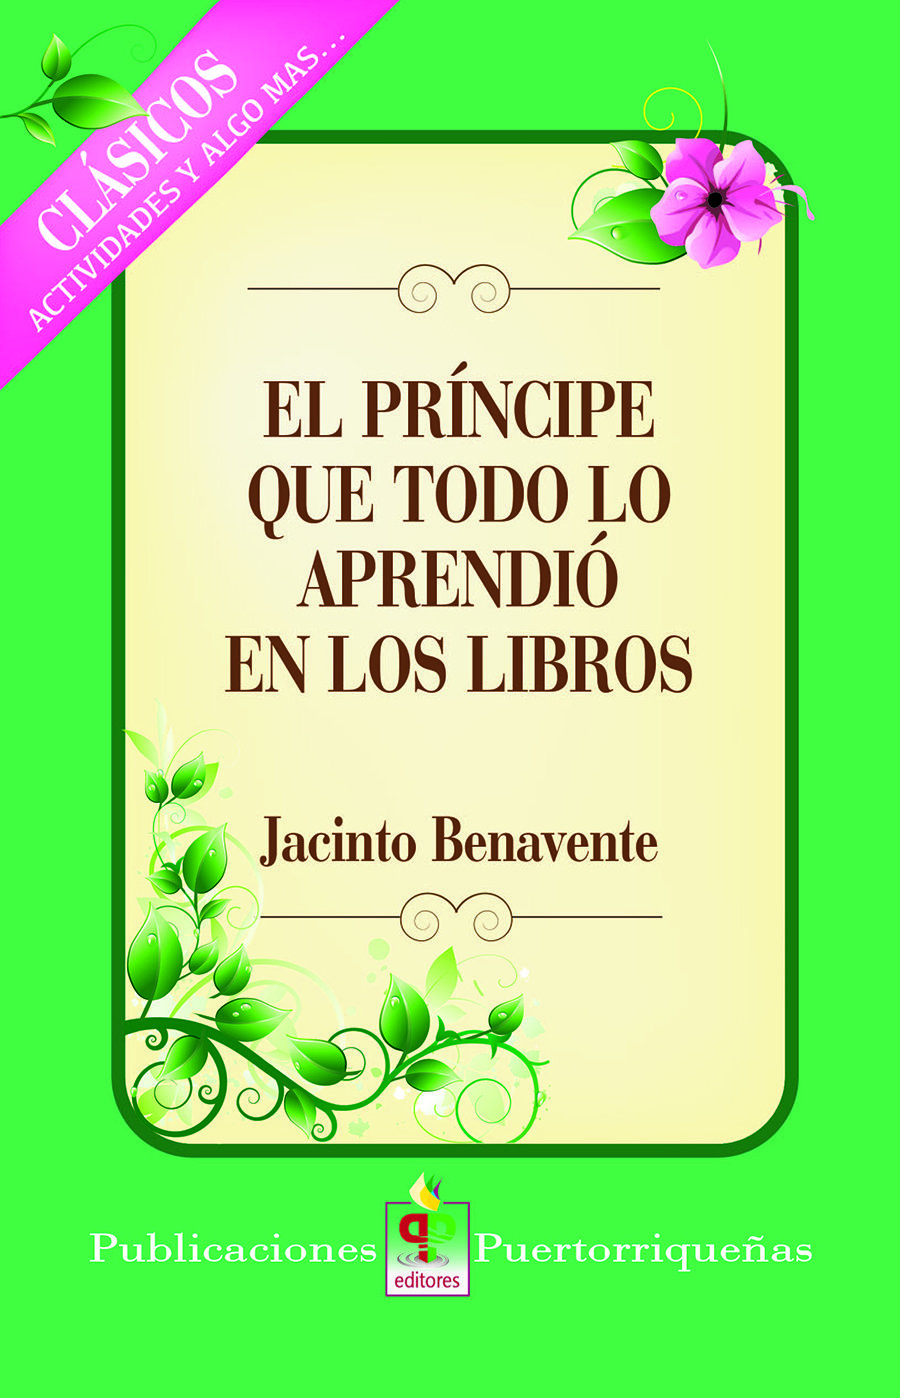 SIXTH GRADE - EL PRINCIPE QUE TODO LO APRENDIO EN LOS LIBROS -  PP - ISBN 9781625370136